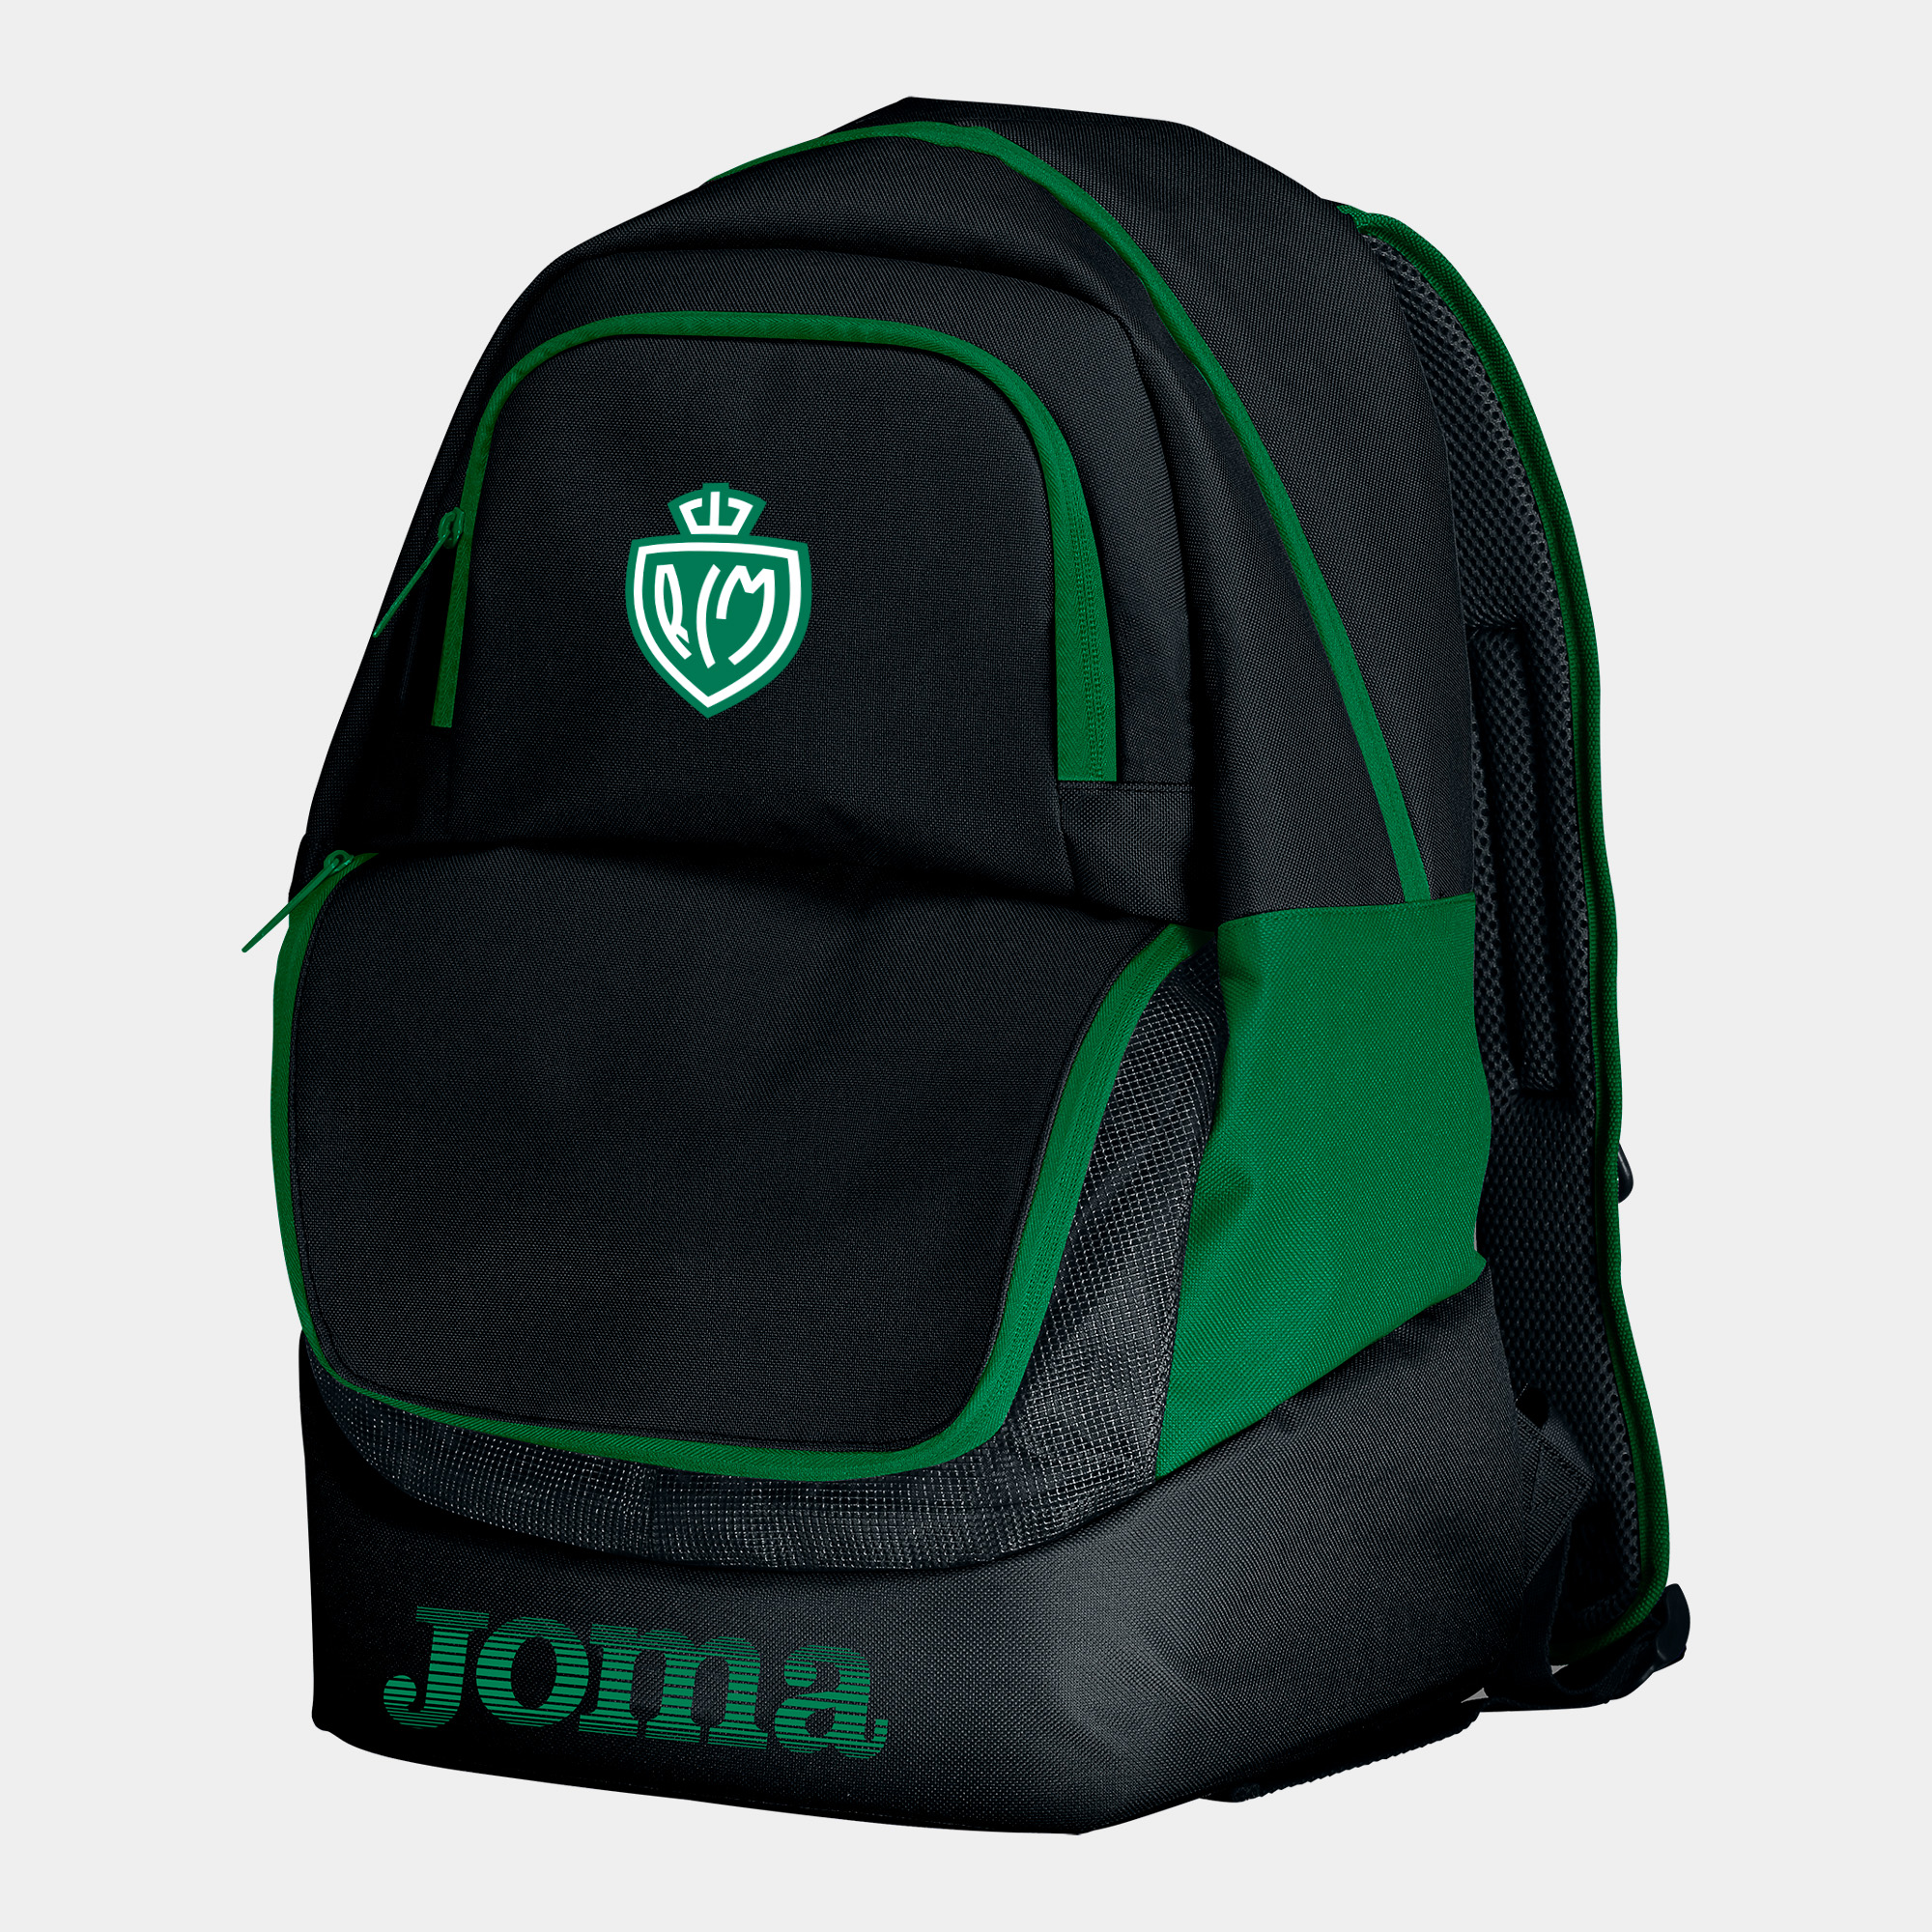 Racing Mechelen - Backpack - shoe bag Diamond II black green